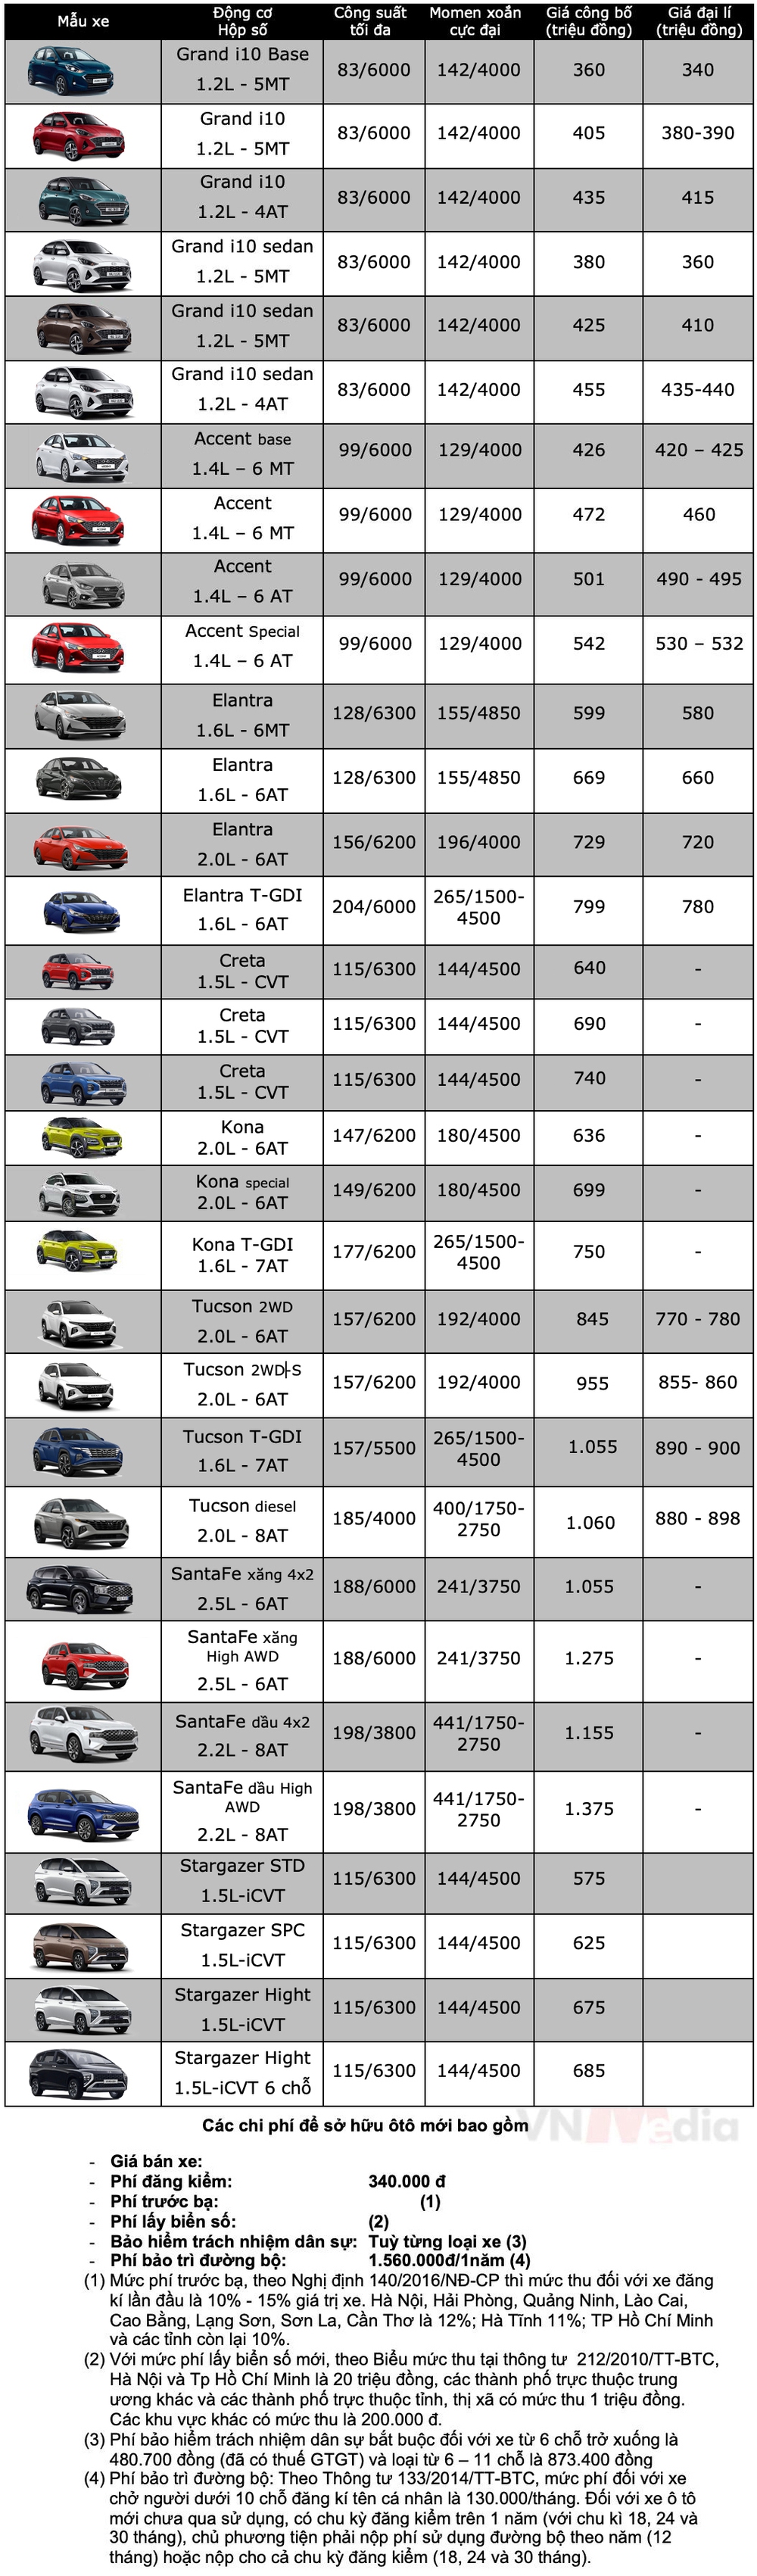 Bảng giá xe Hyundai tháng 5: Hyundai Creta tiếp tục được giảm giá tới 70 triệu đồng - Ảnh 2.